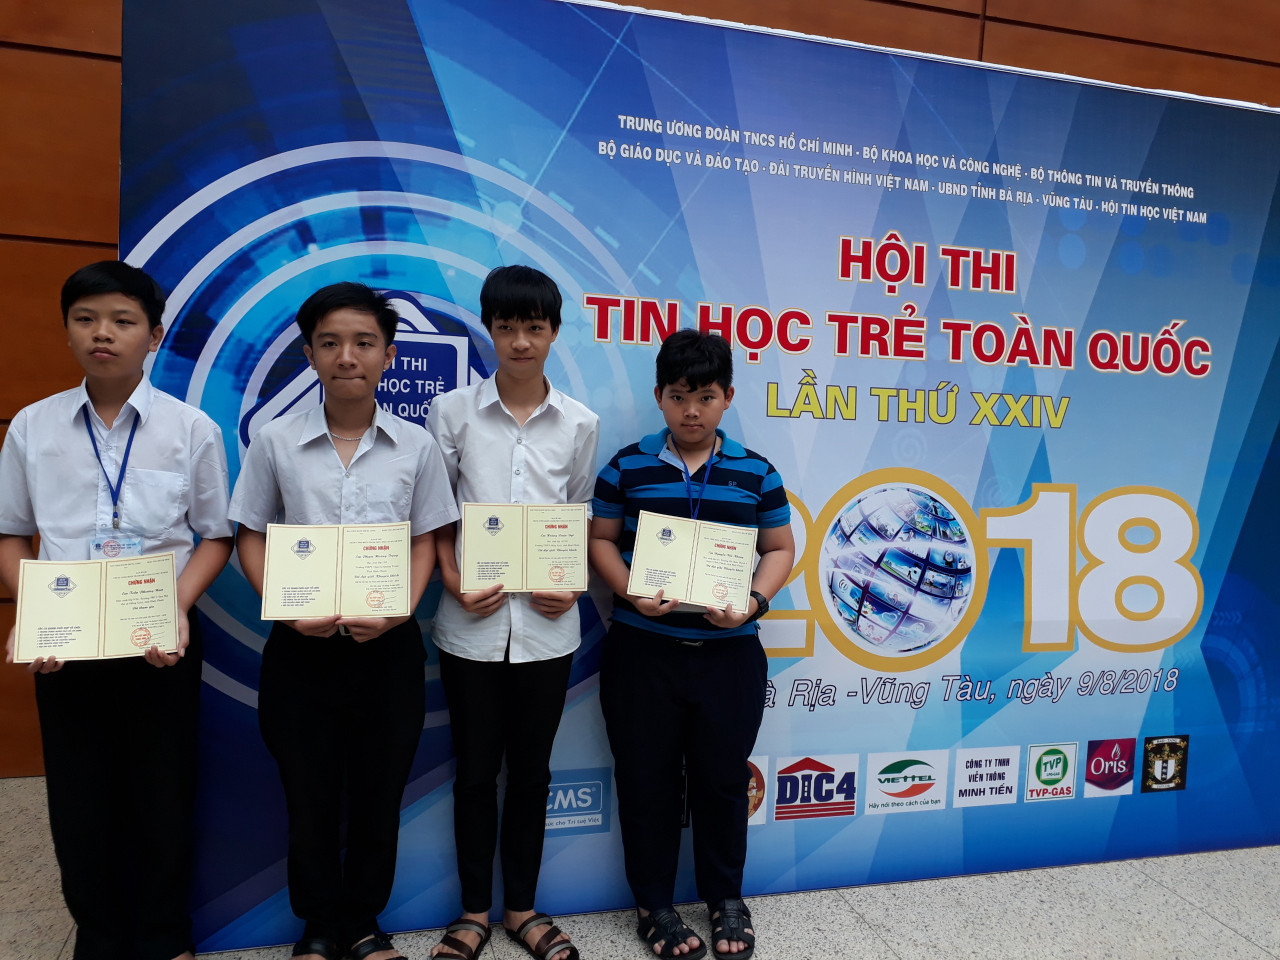 Bình Phước: 4 thí sinh đạt giải khuyến khích tham dự Hội thi tin học trẻ toàn quốc năm 2018.